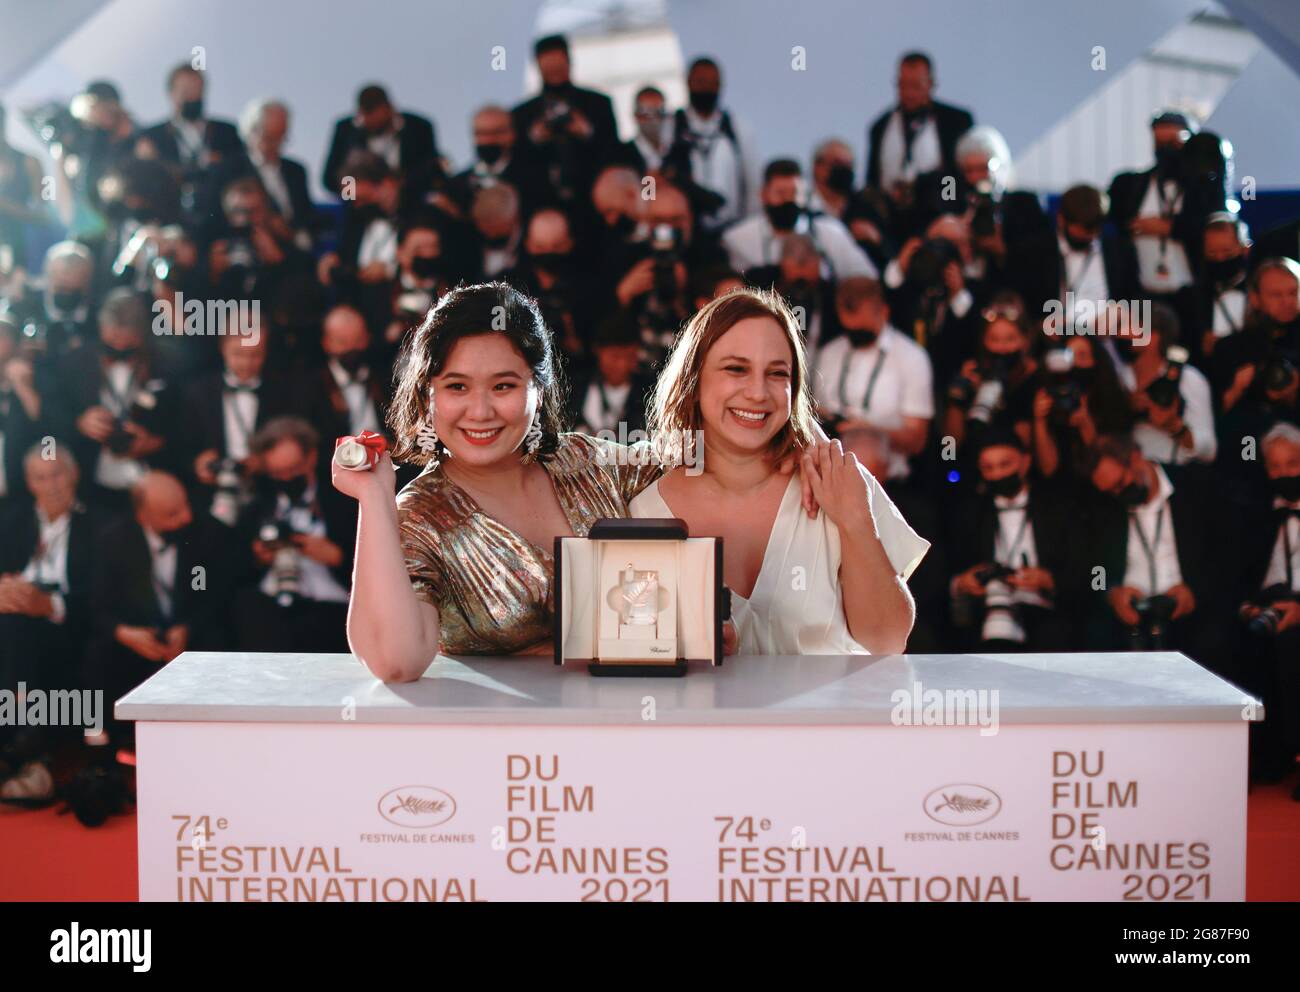 Le 74e Festival de Cannes - Photocall après la cérémonie de clôture - Cannes, France, 17 juillet 2021. Tang Yi, petit film Palme d'Or lauréat du film "All the Crows in the World", pose avec Lasmin Tenucci . REUTERS/Sarah Meyssonnier Banque D'Images